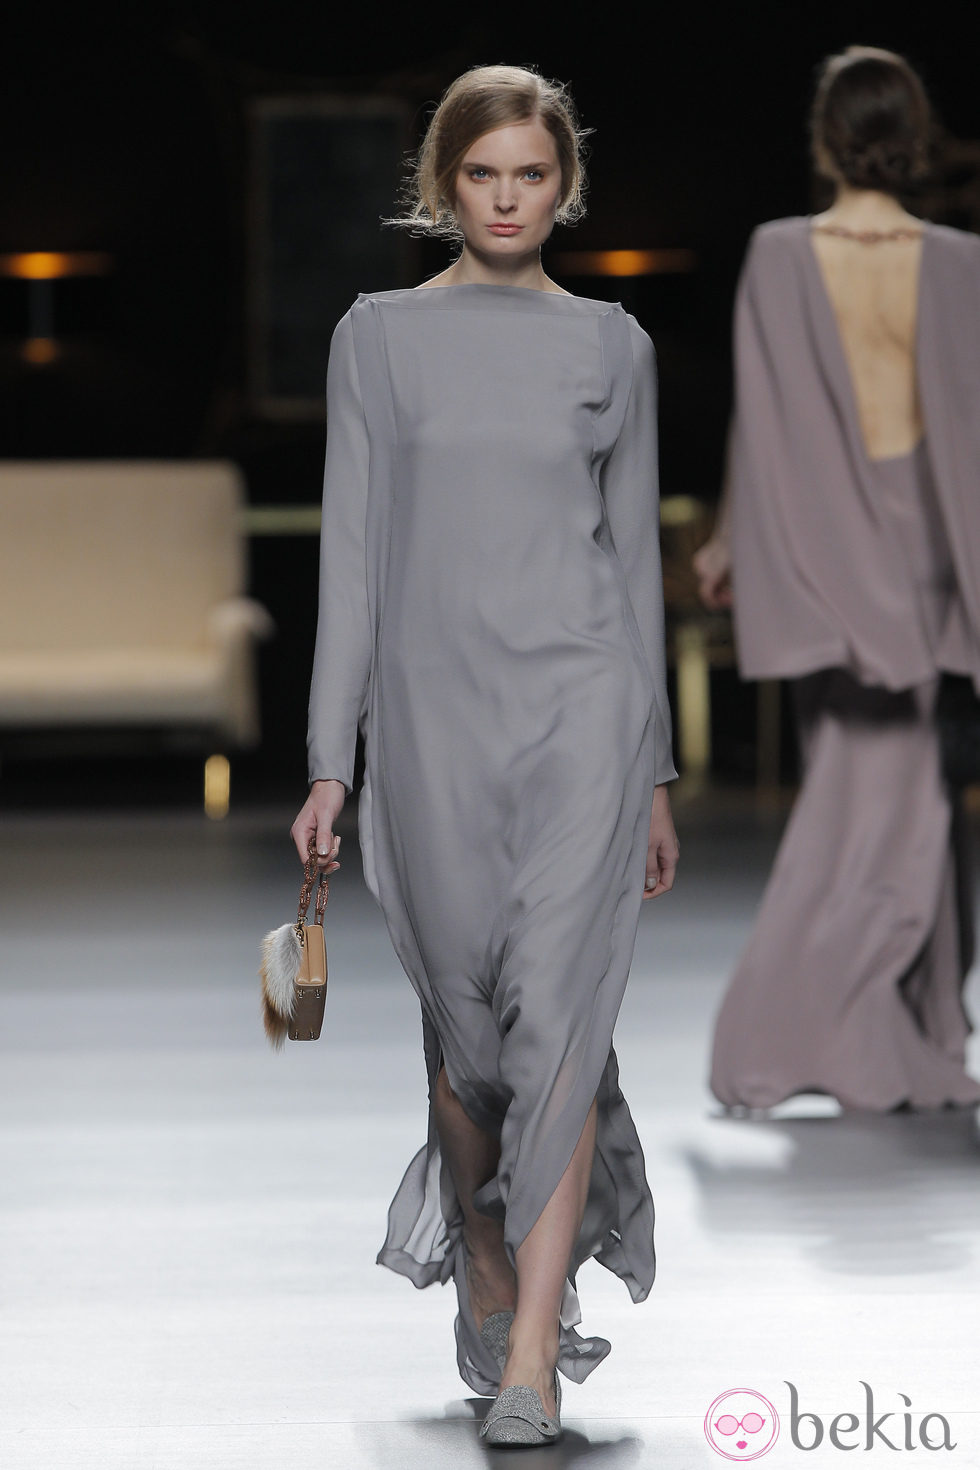 Vestido largo gris perla de la colección otoño/invierno 2013/2014 de Juanjo Oliva en Madrid Fashion Week